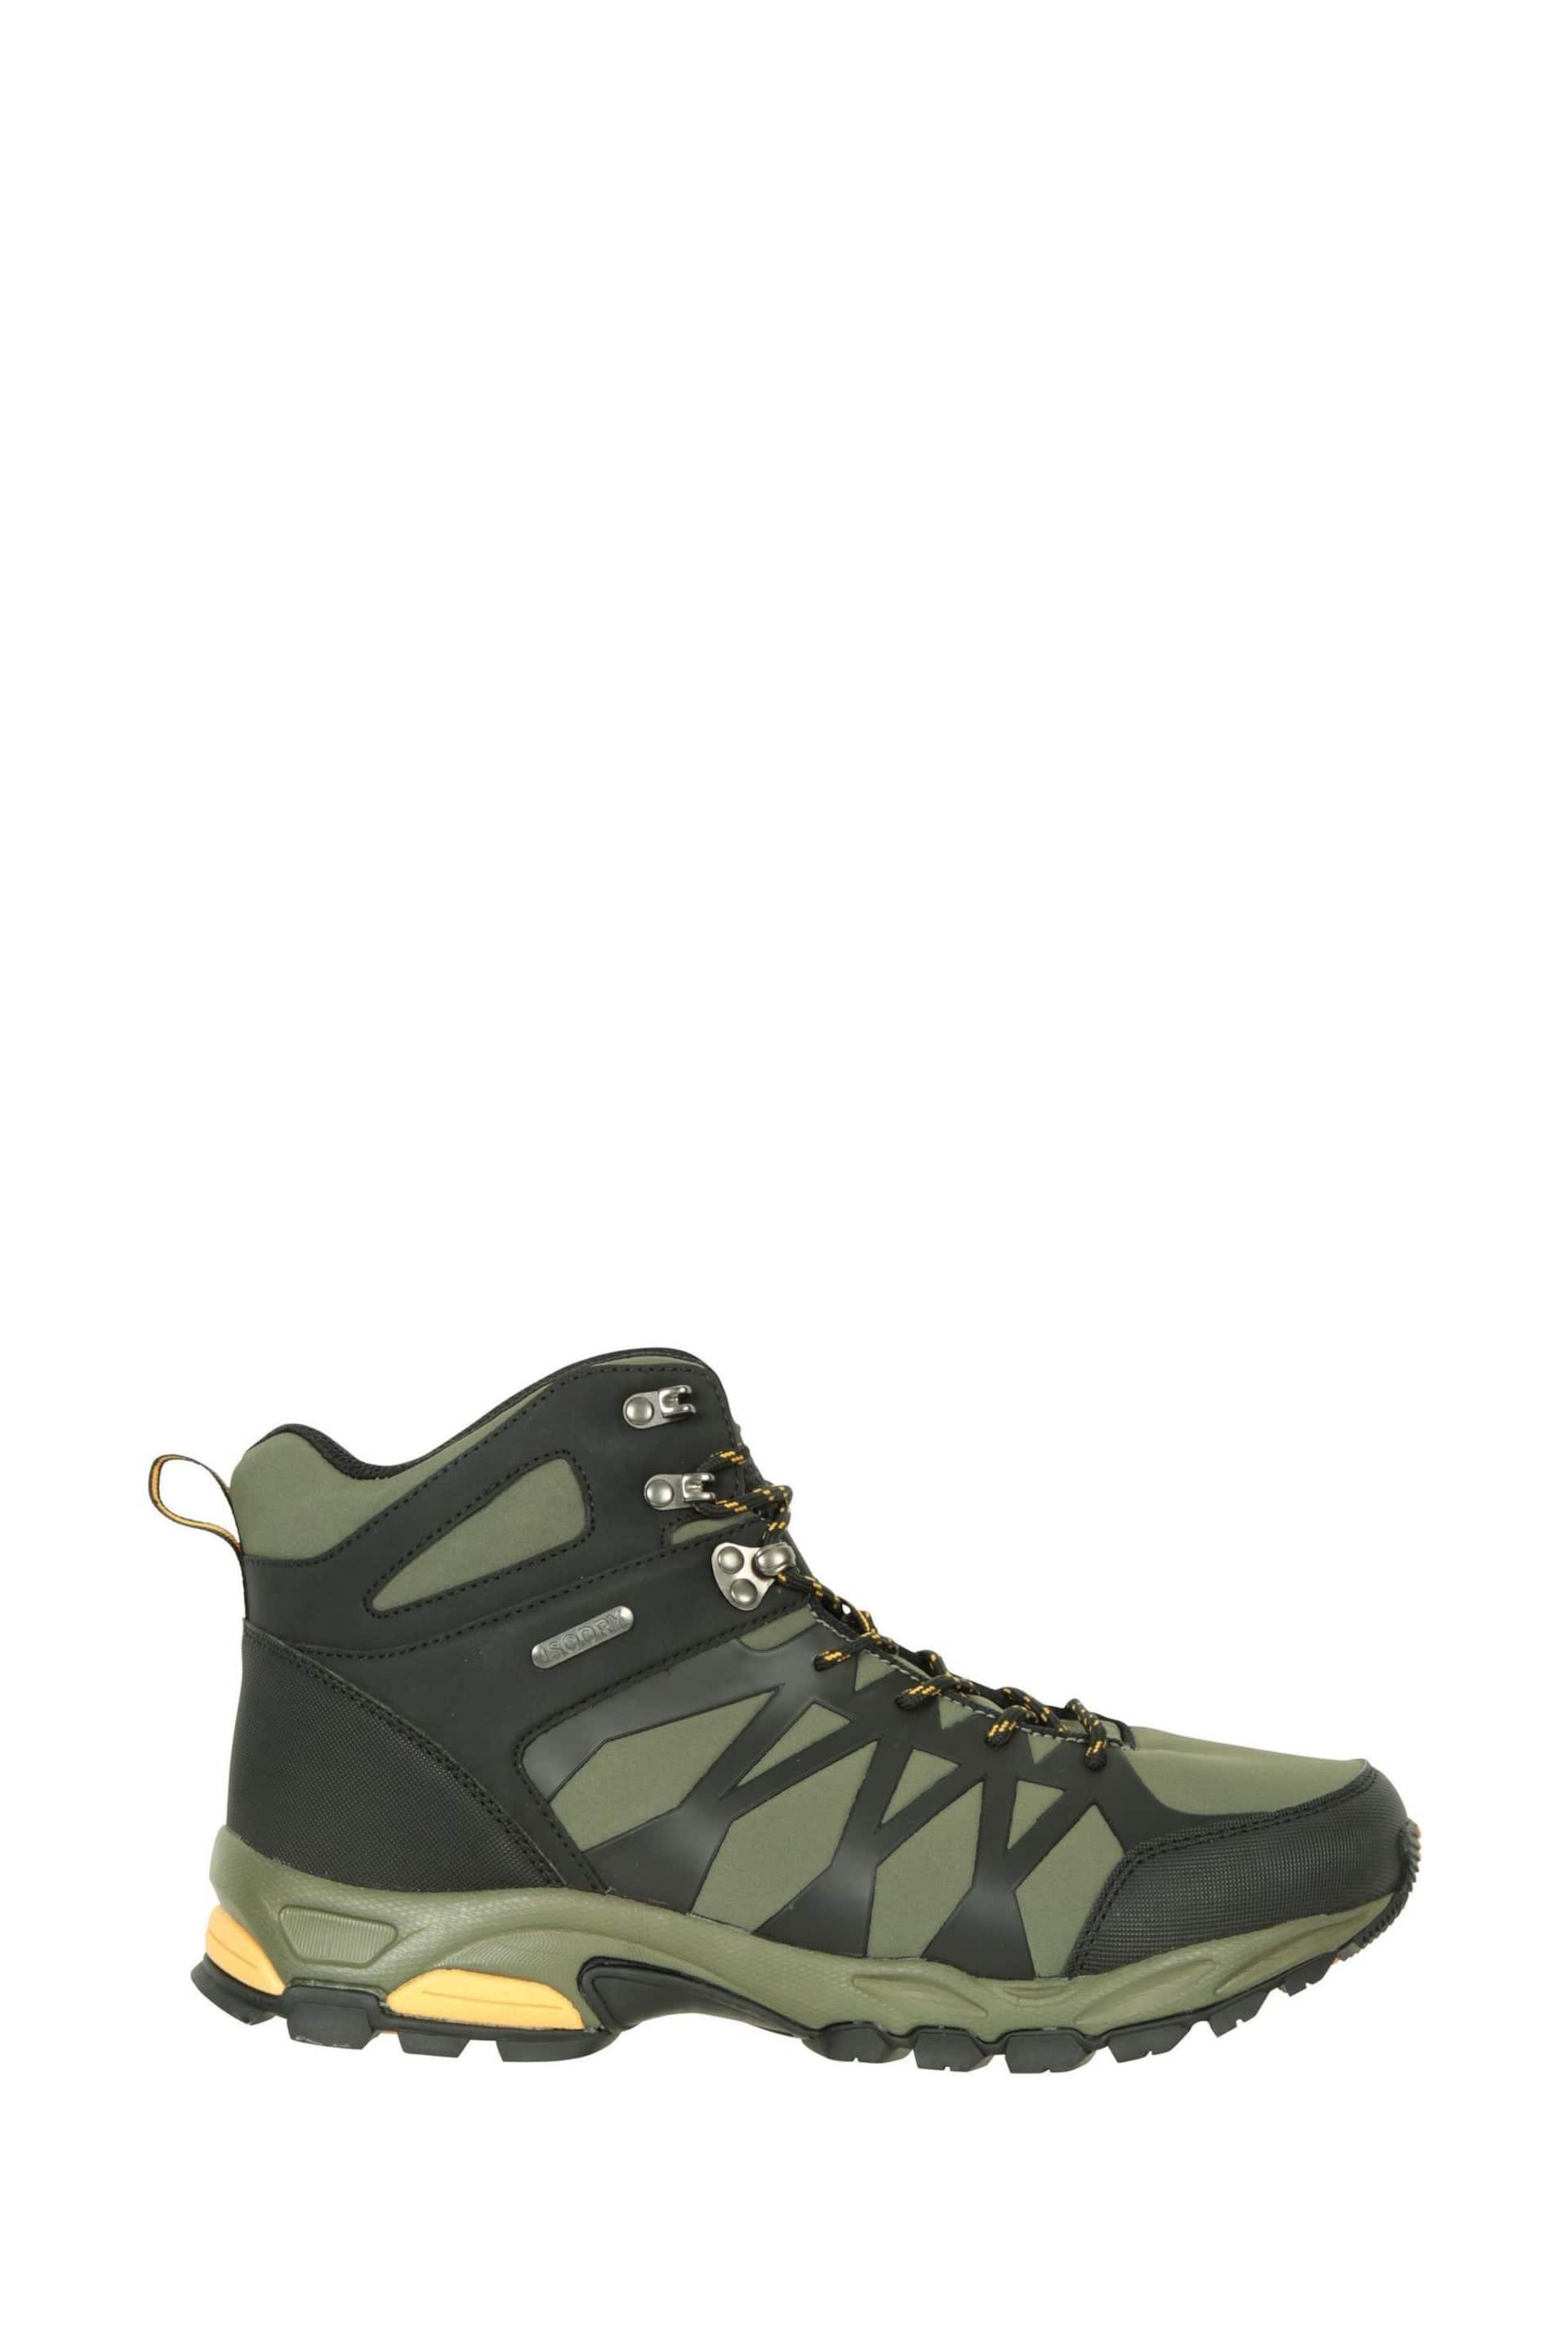 Mountain Warehouse Green Mens Trekker II Waterproof Softshell Walking Boots - Image 2 of 5